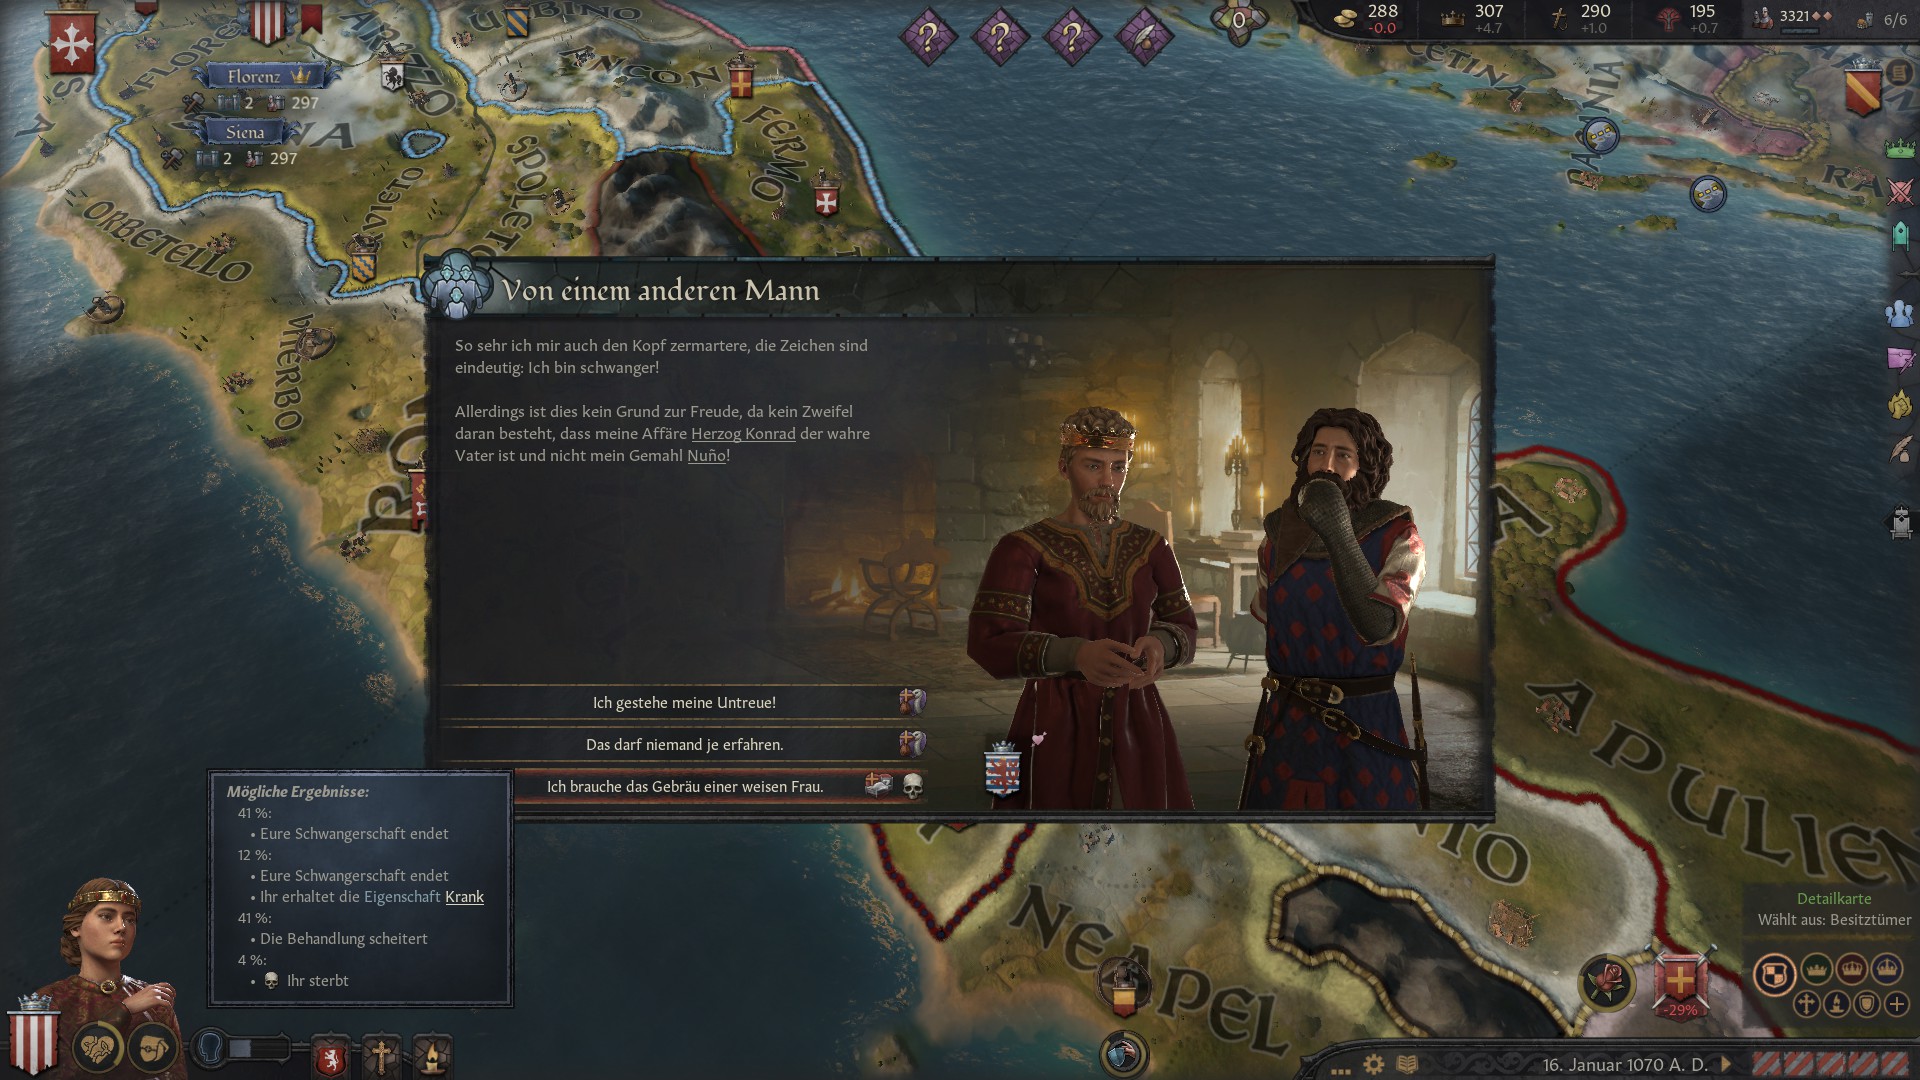 Screenshot aus "Crusader Kings 3", der die Entscheidungsauswahl eines Events zeigt, bei dem eine Herrscherin von einem anderen Mann als ihrem Ehemann schwanger ist. Sie hat nun die Wahl, entweder ihrem Mann von der Affäre zu erzählen, es ihm zu verheimlichen und ihm zu erzählen, er sei der Vater, oder das Kind abzutreiben.